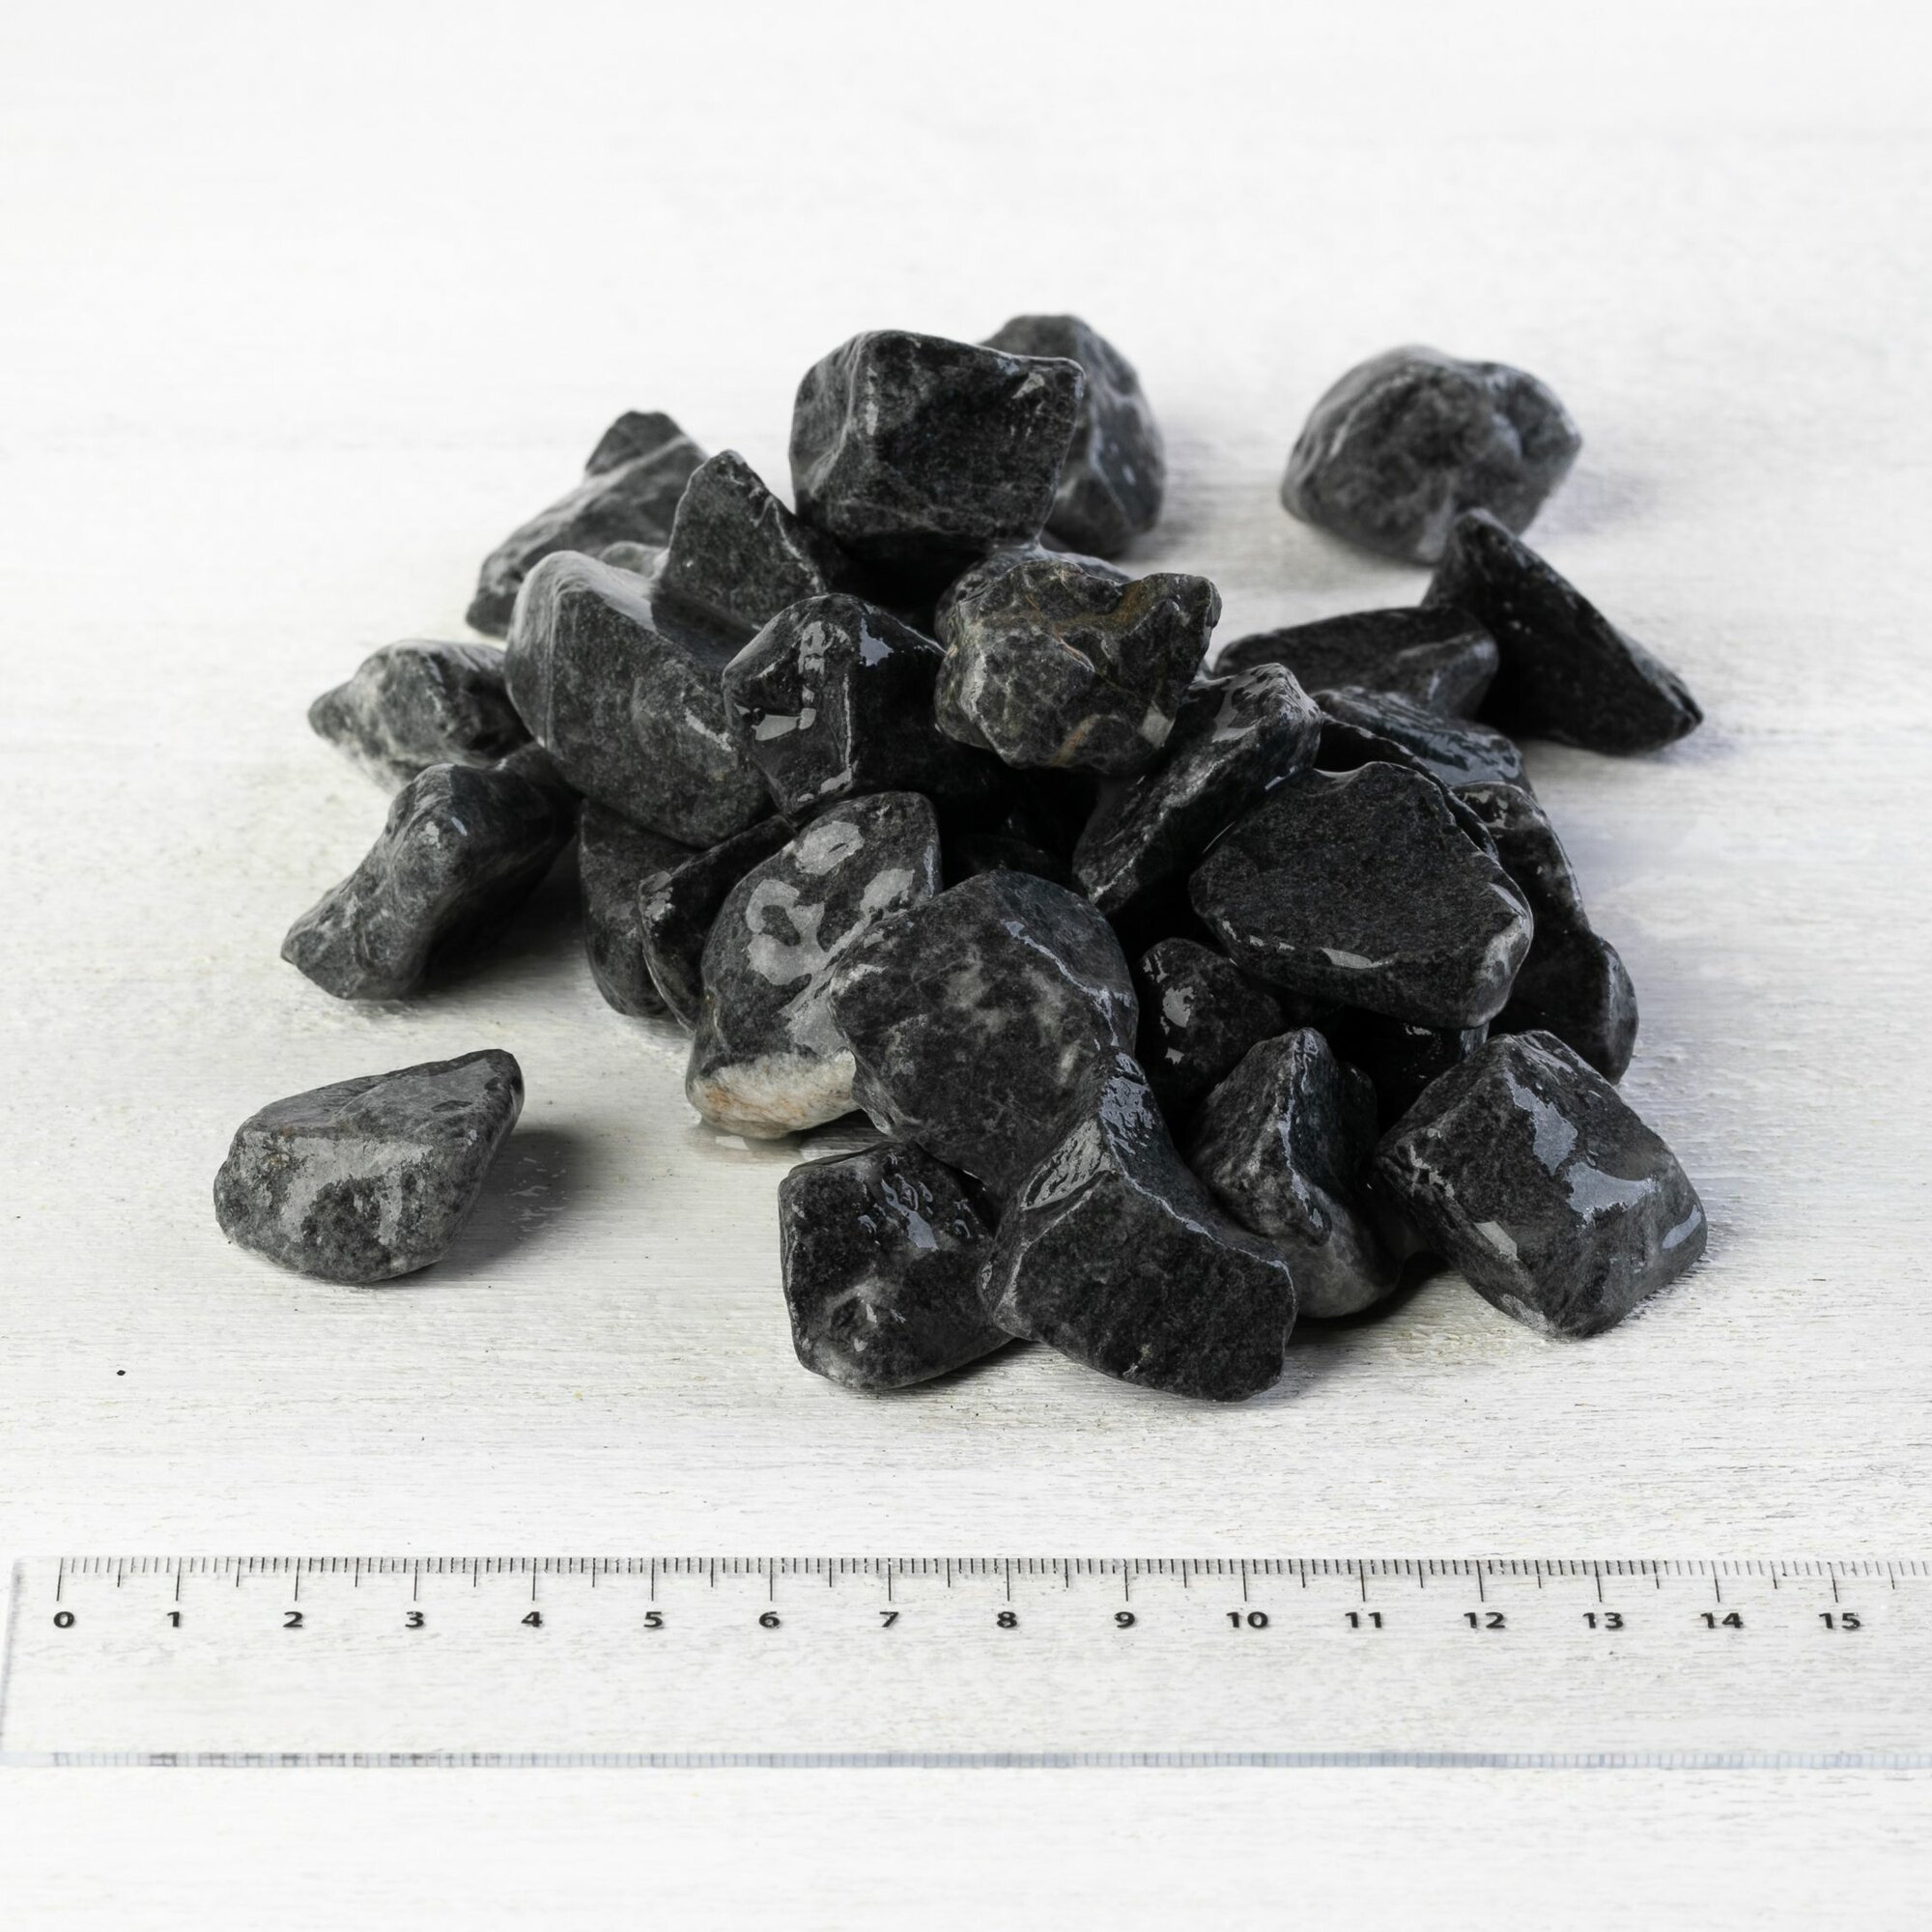 Камень ландшафтный мрамор черный Доломит, фракция 10-20 мм 10 кг (315). Декоративный грунт, каменная крошка, щебень